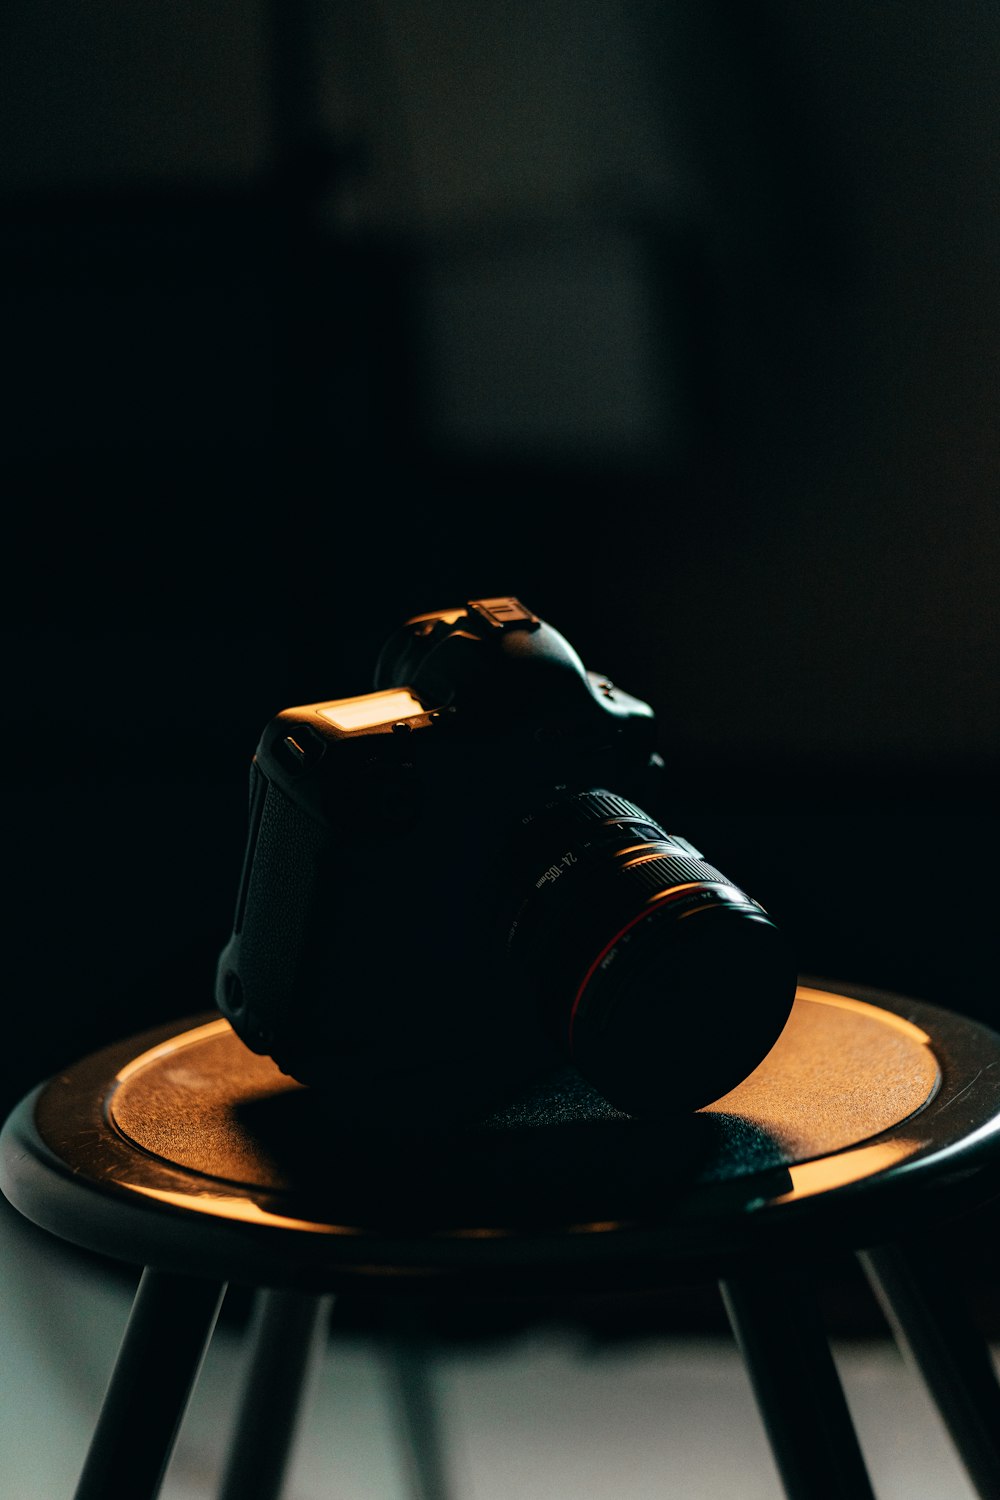 Fotocamera DSLR nera su tavolo rotondo marrone